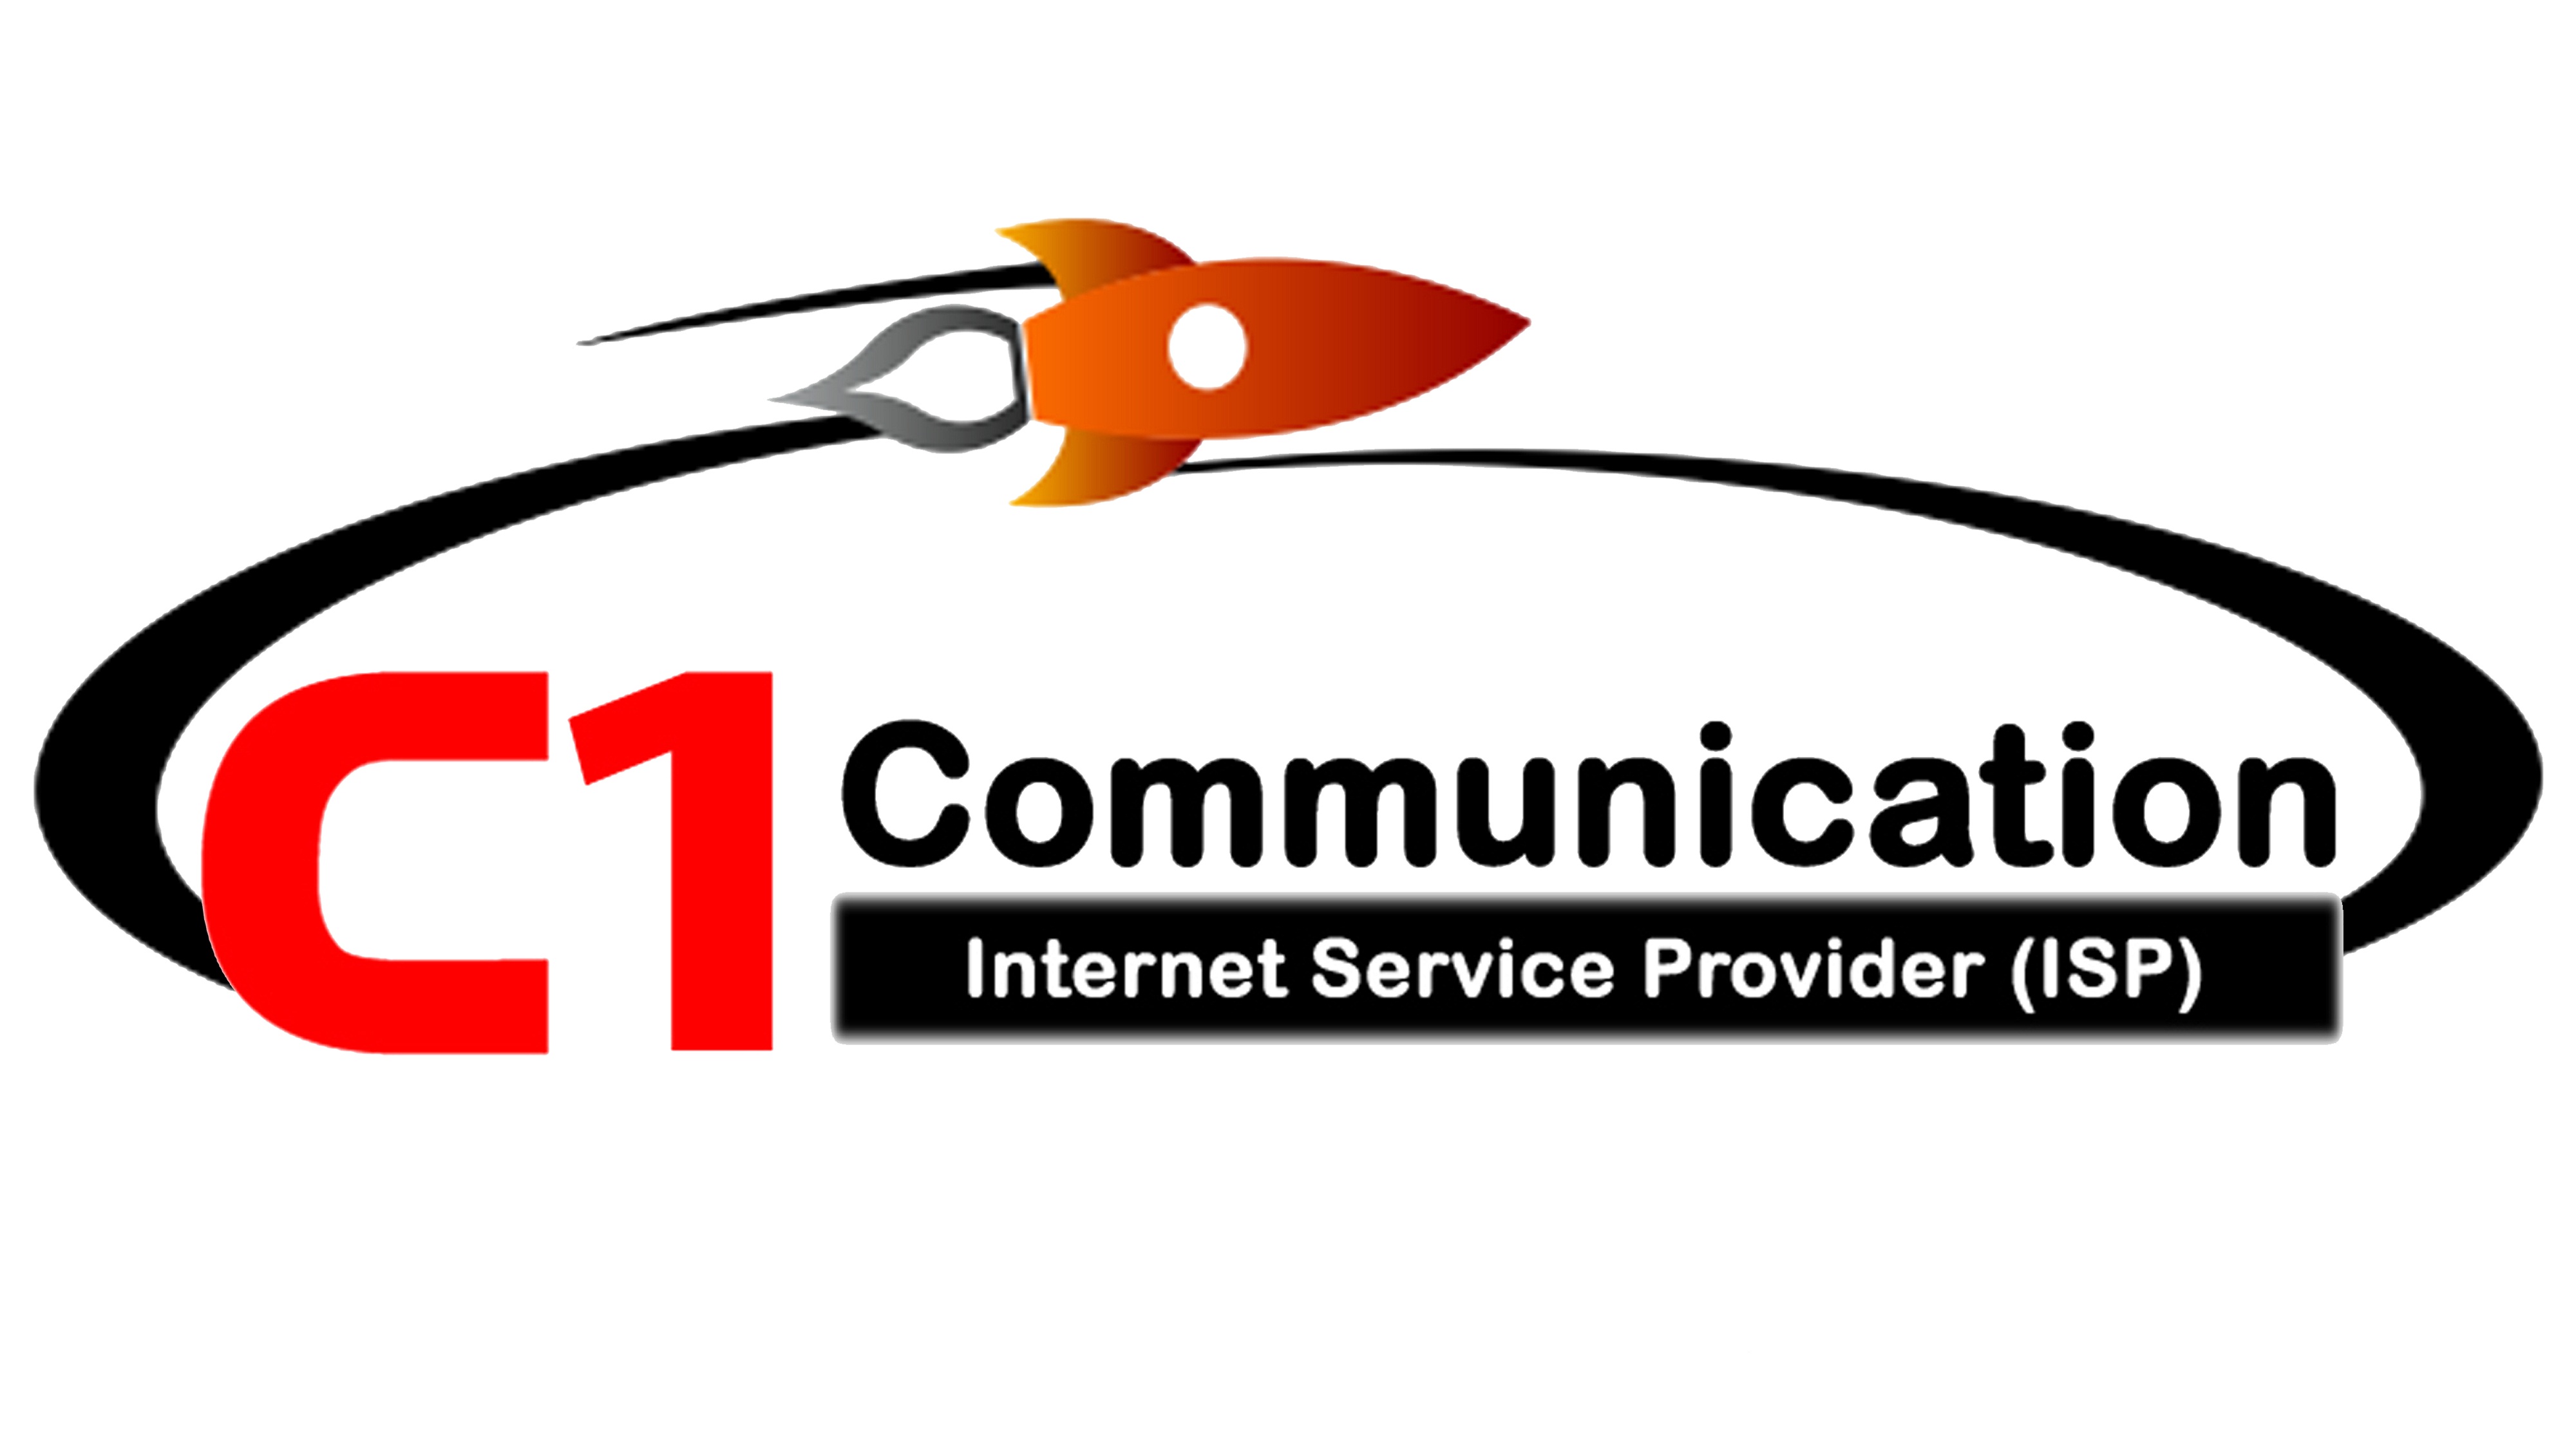 C1 Communication-logo